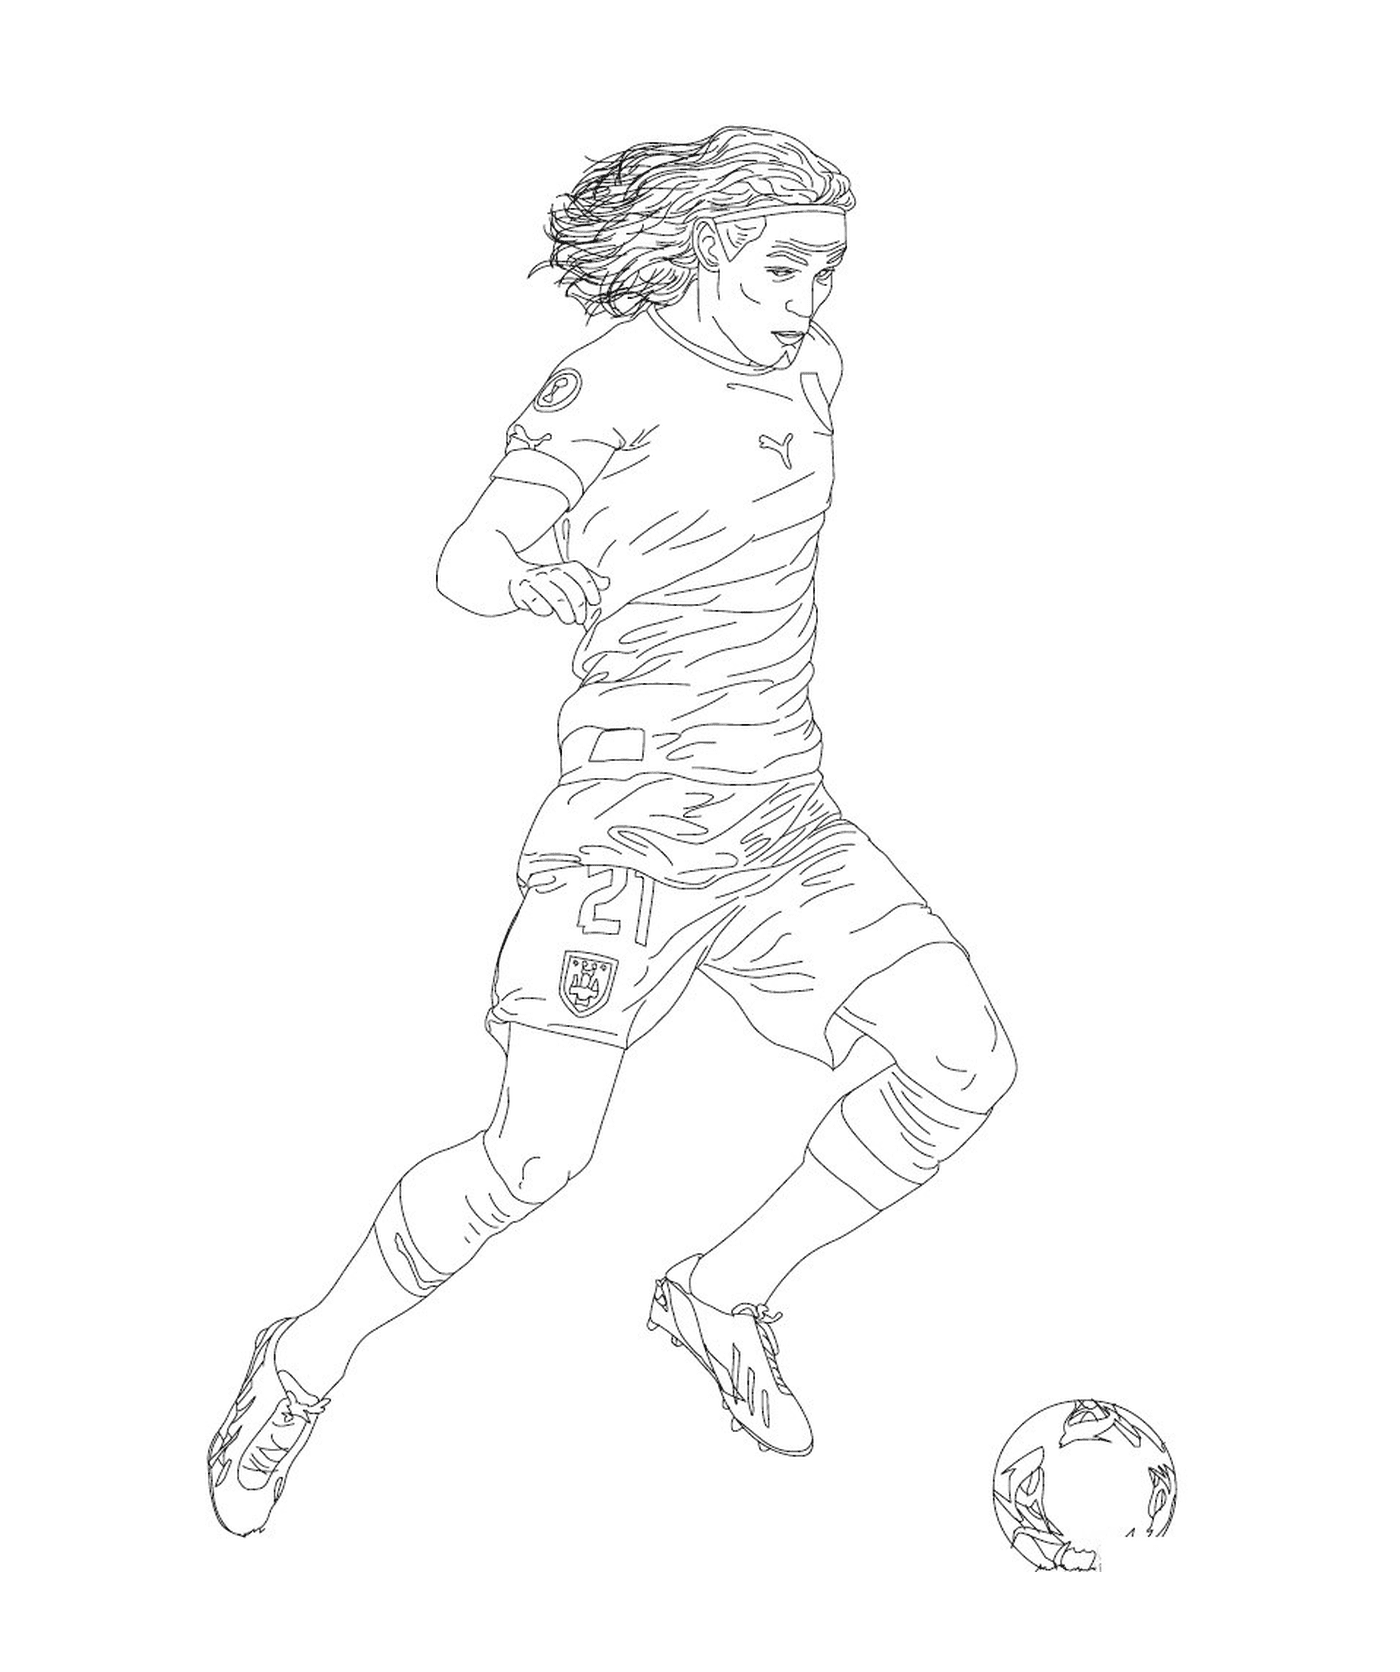  Un jugador de fútbol pateando en una pelota 